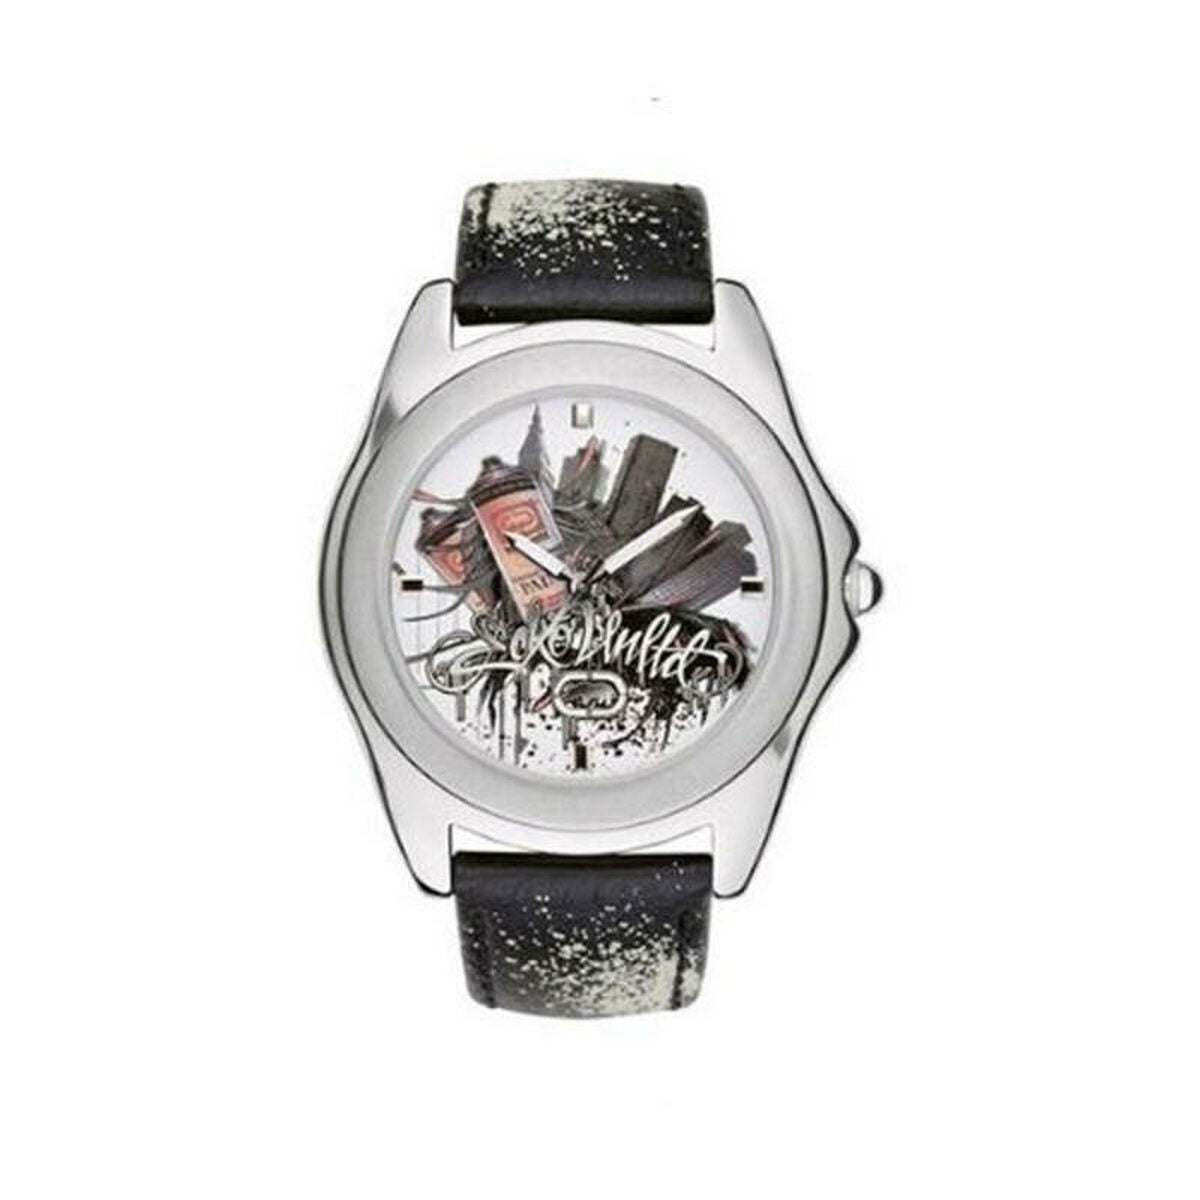 Horloge Heren Marc Ecko E07502G3 (Ø 45 mm)